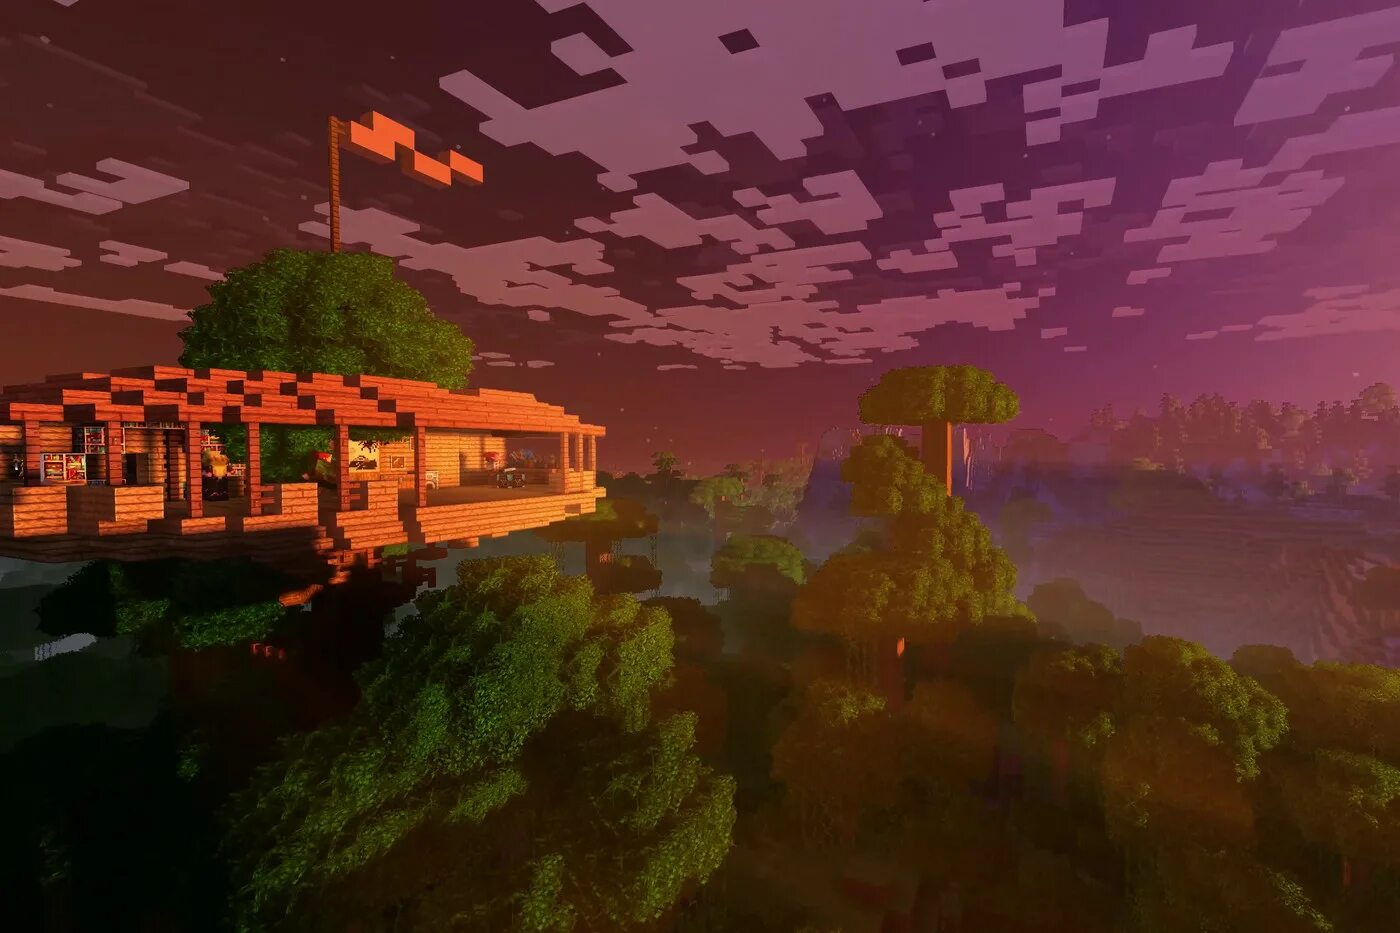 Показать майнкрафт 4. Minecraft 2 4k. Красивый фон для МАЙНКРАФТА. Красивые пейзажи майнкрафт. Красивый пейзаж в МАЙНКРАФТЕ.